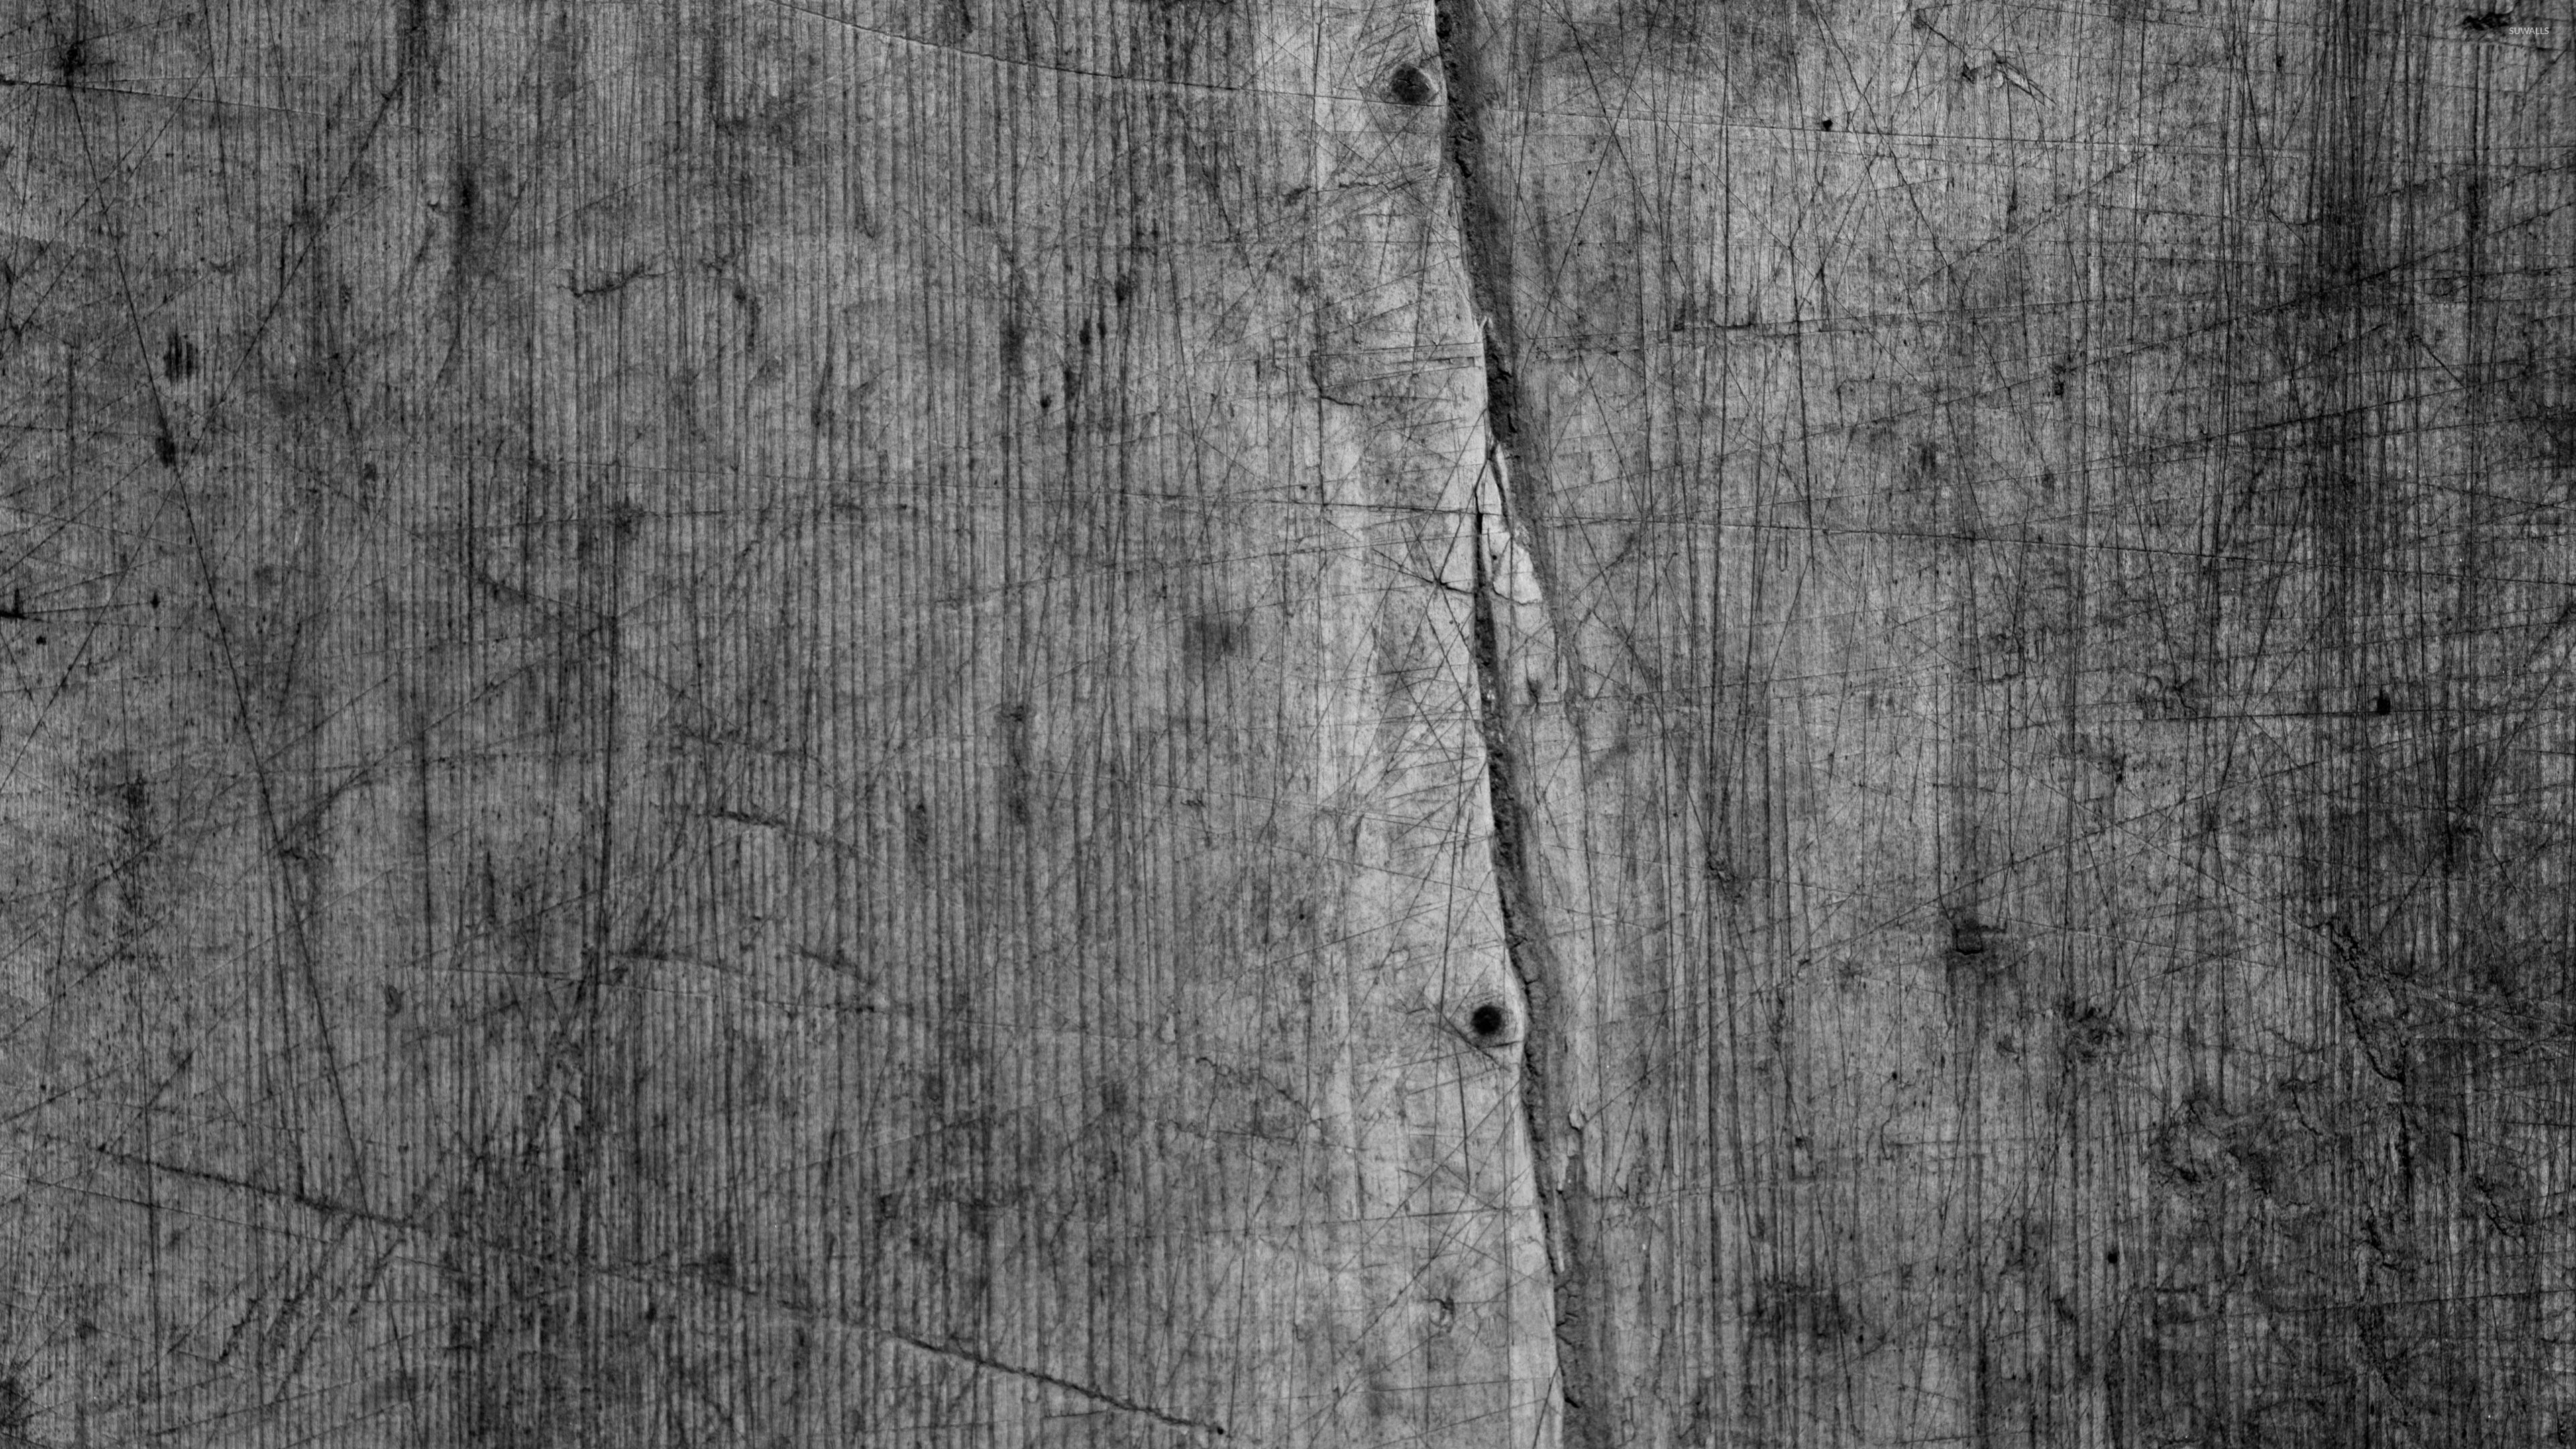 carta da parati in legno grigio,legna,tavola,albero,bianco e nero,fotografia in bianco e nero